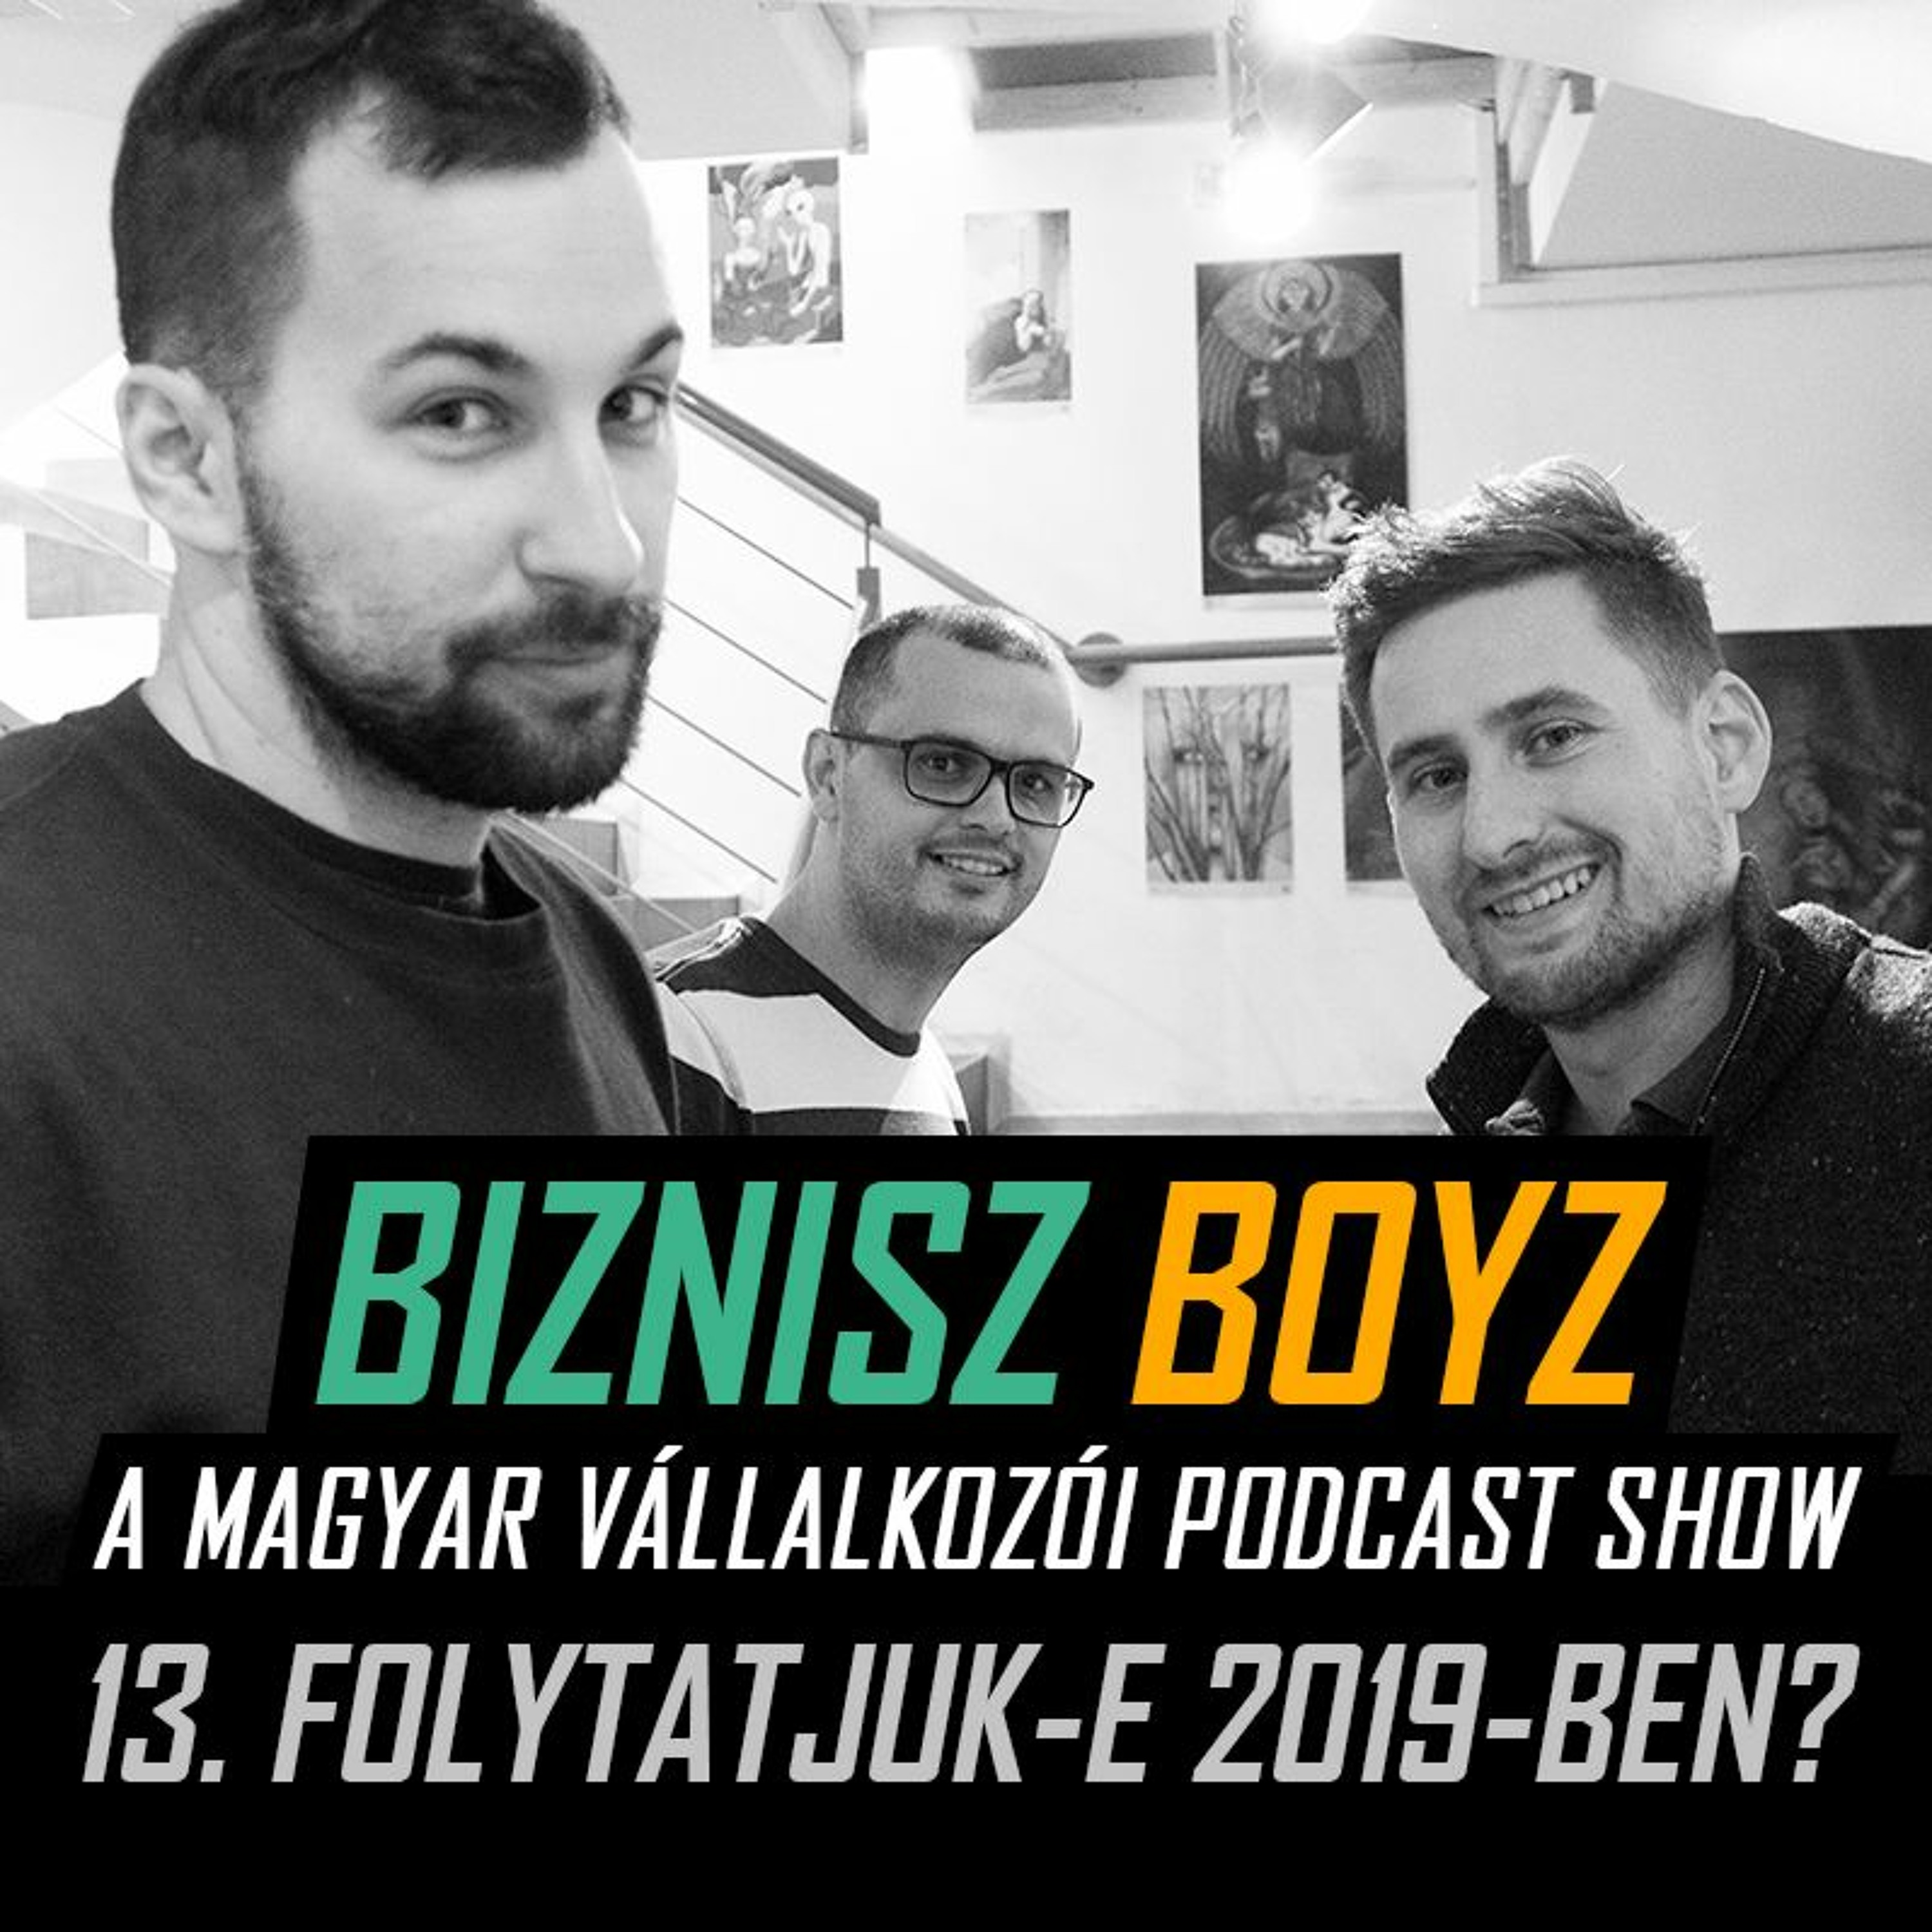 13. Lesz-e Biznisz Boyz 2019-ben? (Az évvégi közösségtalálkozó élő felvétele) | Biznisz Boyz Podcast